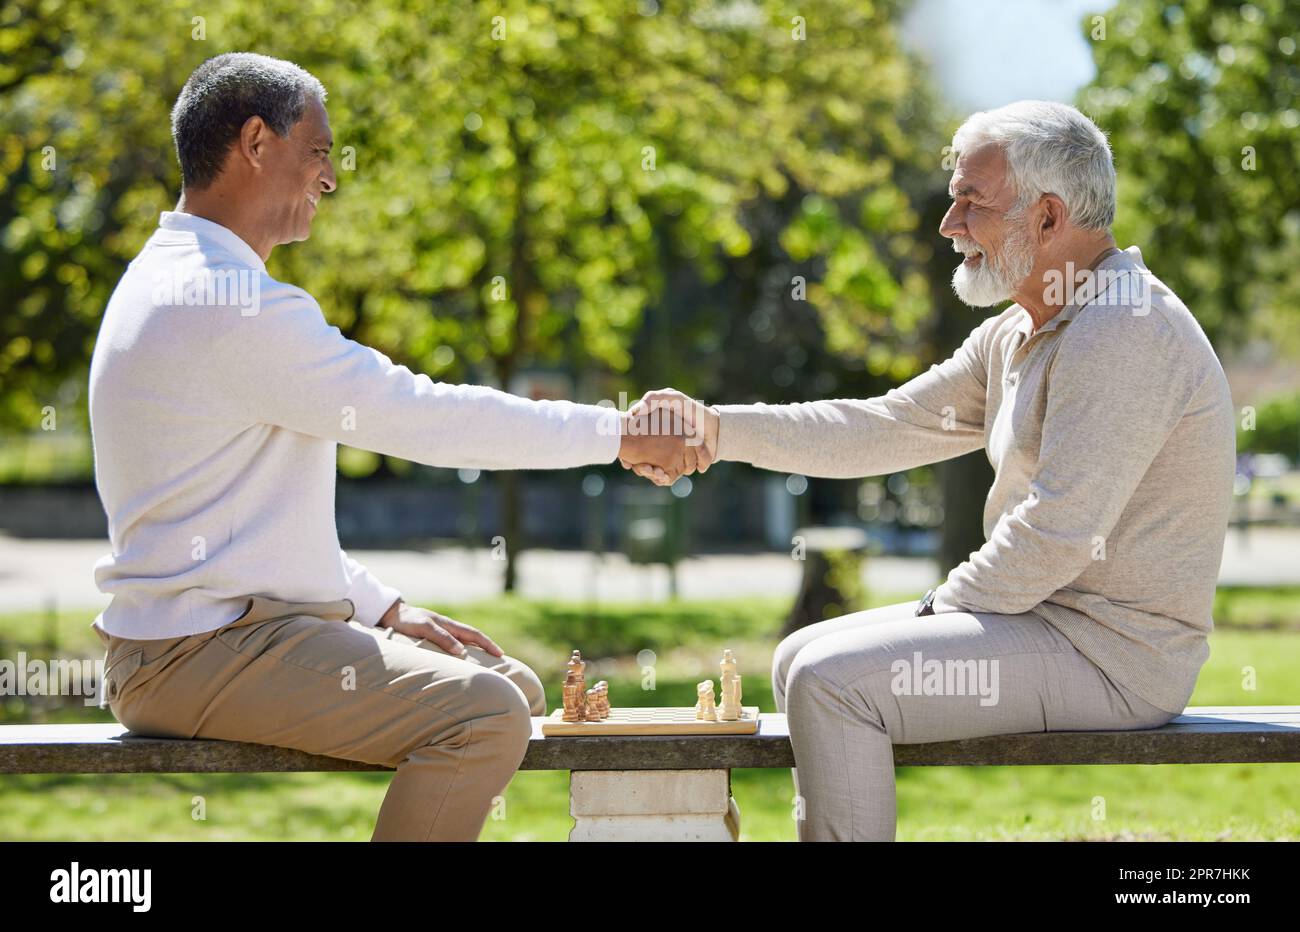 Möge der beste Mann gewinnen. Zwei ältere Männer sitzen zusammen auf einer Bank im Park und schütteln die Hände, bevor sie Schach spielen. Stockfoto